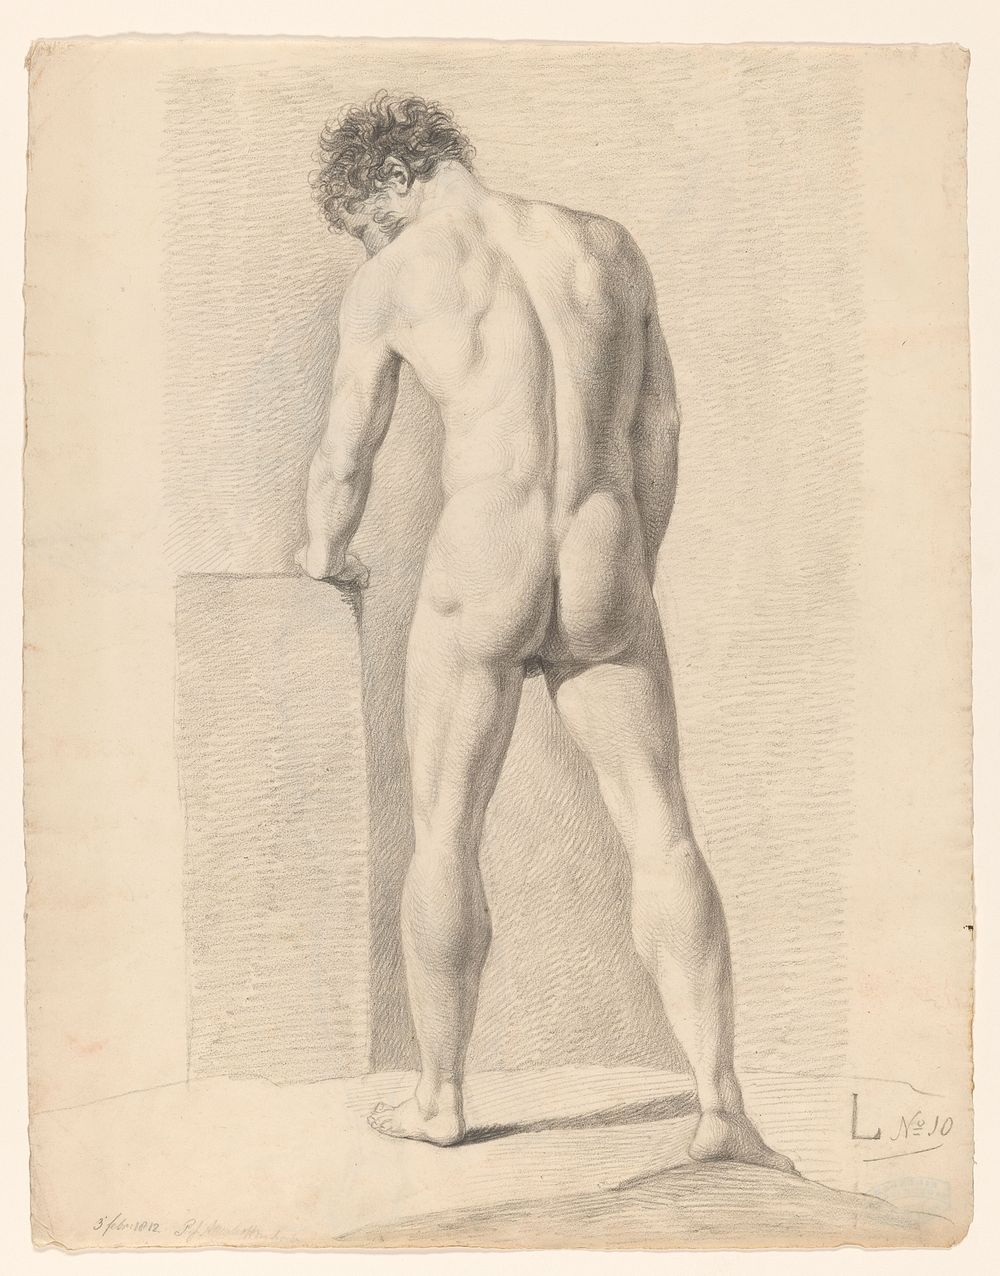 Staand mannelijk naakt, op de rug gezien (c. 1812) by A Waterloo and anonymous